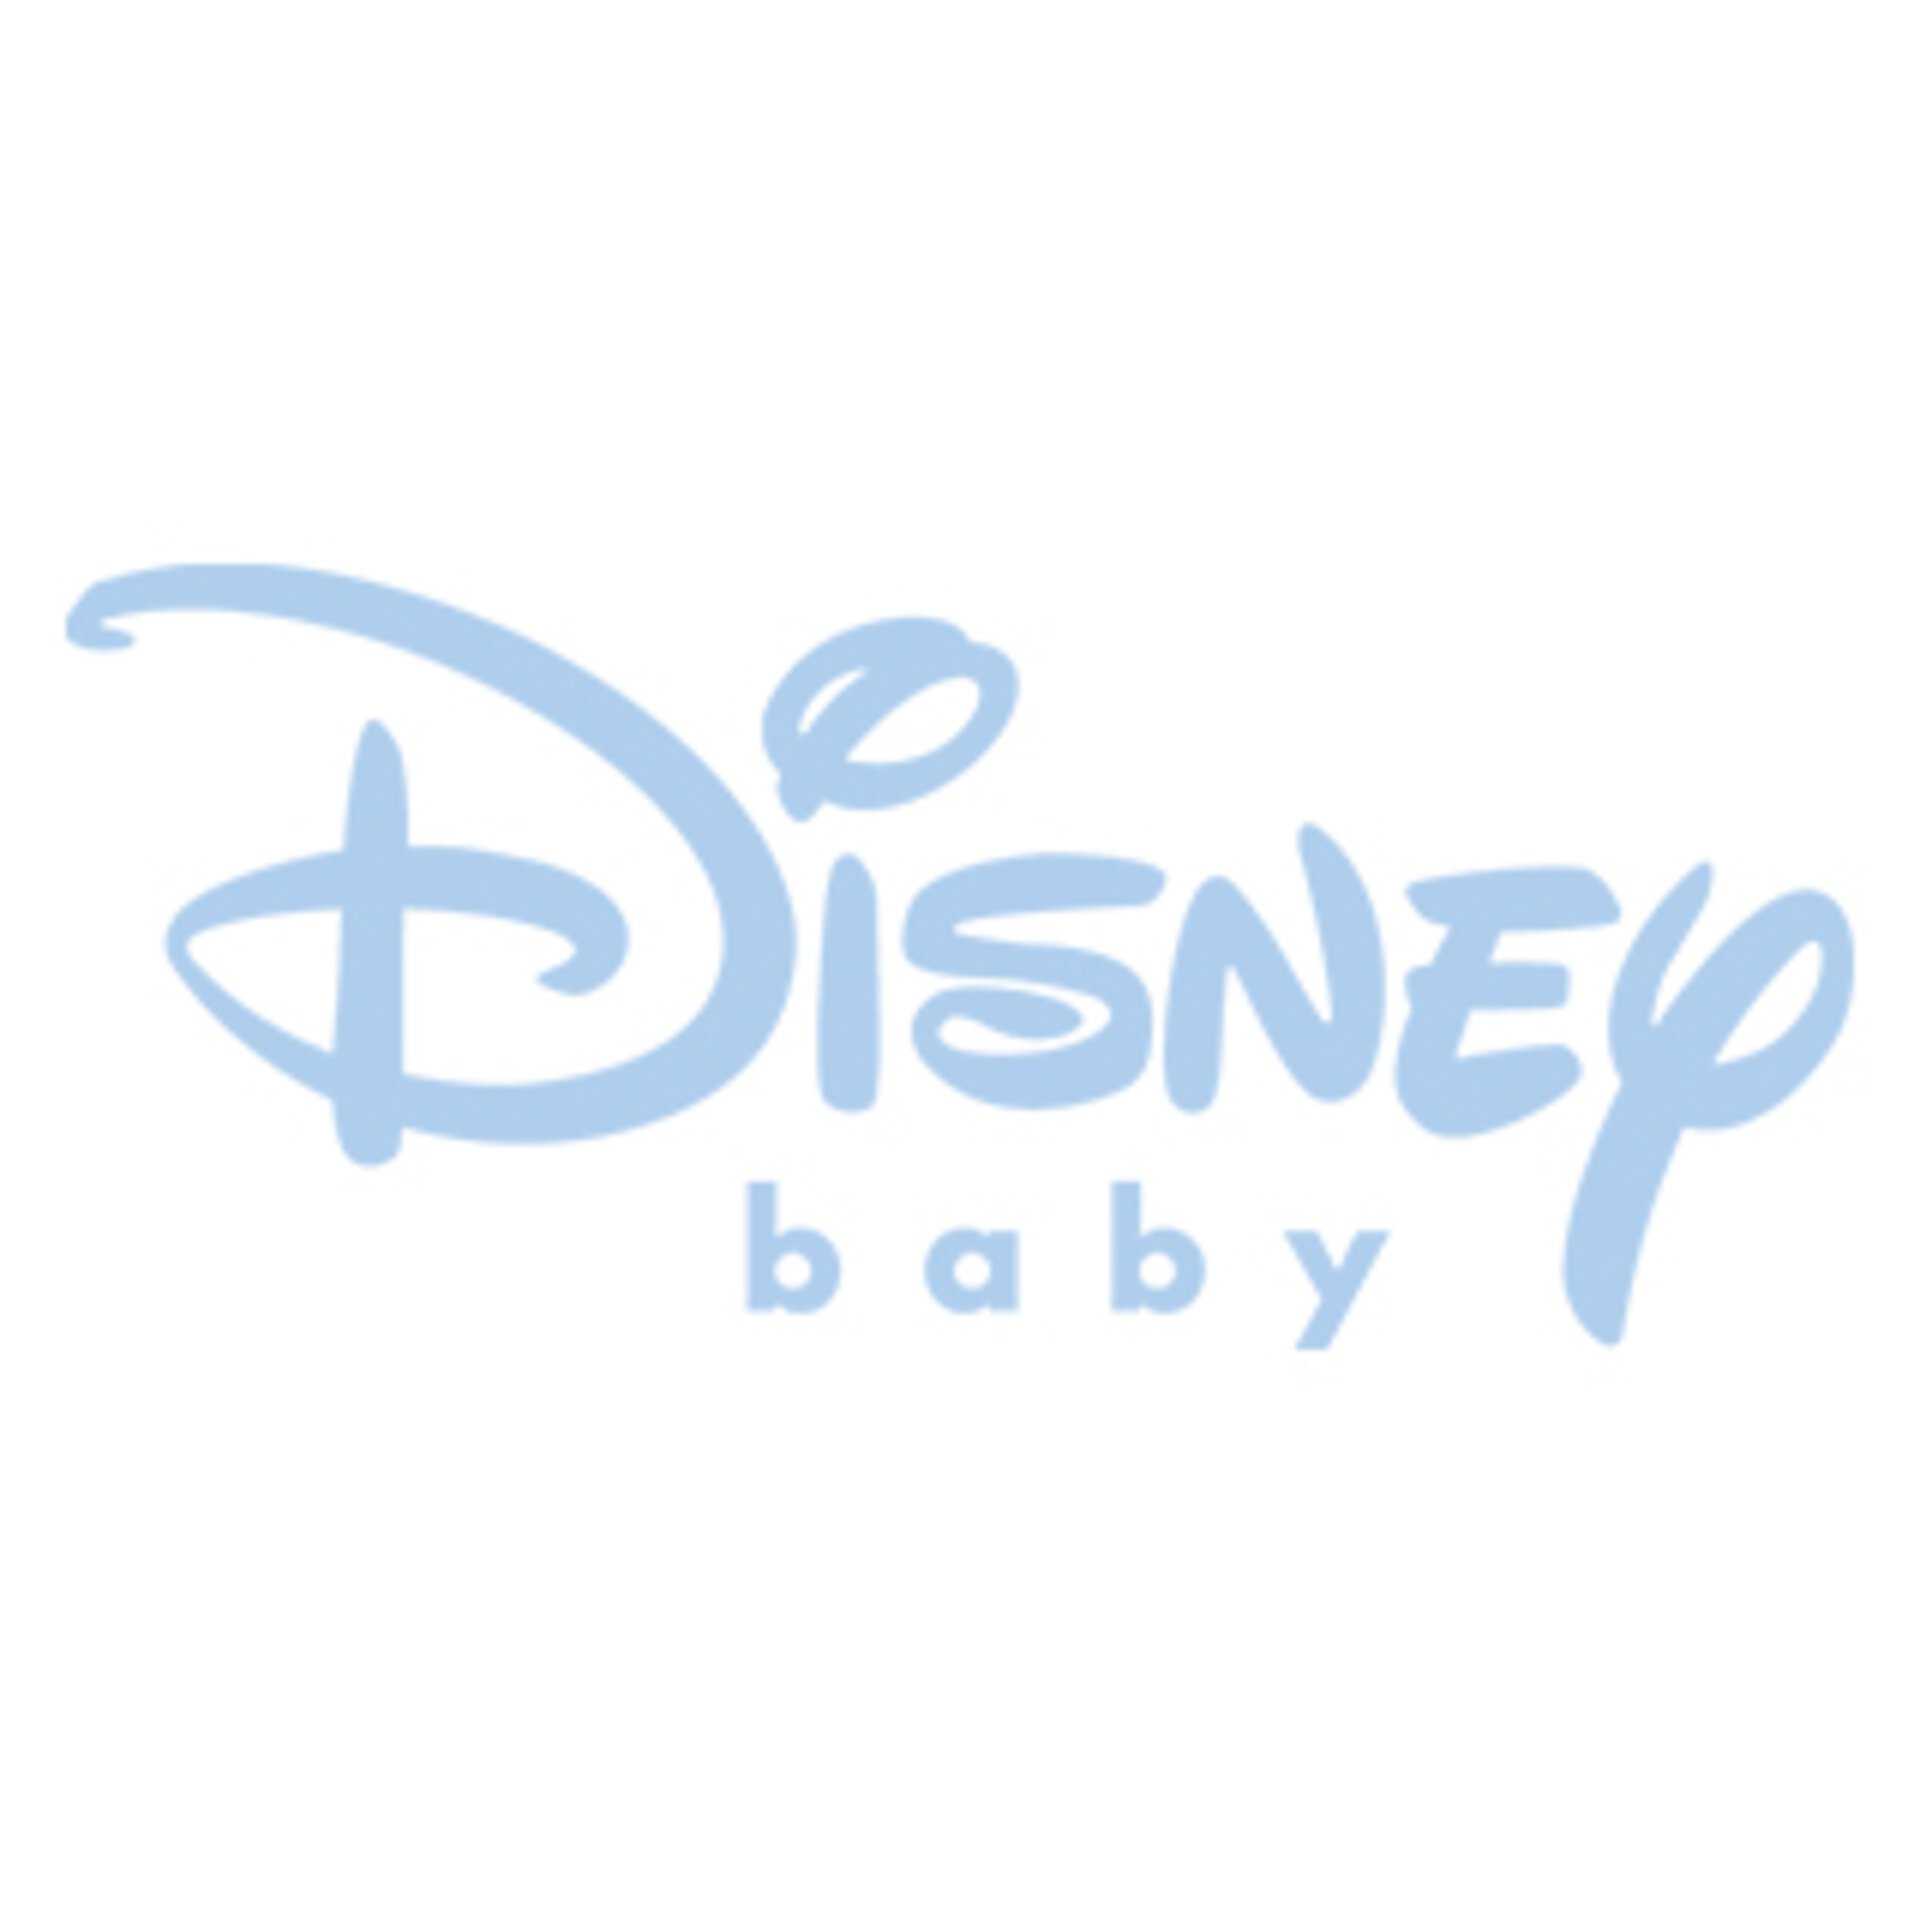 Disney baby Heimtextilien bei Möbel Inhofer